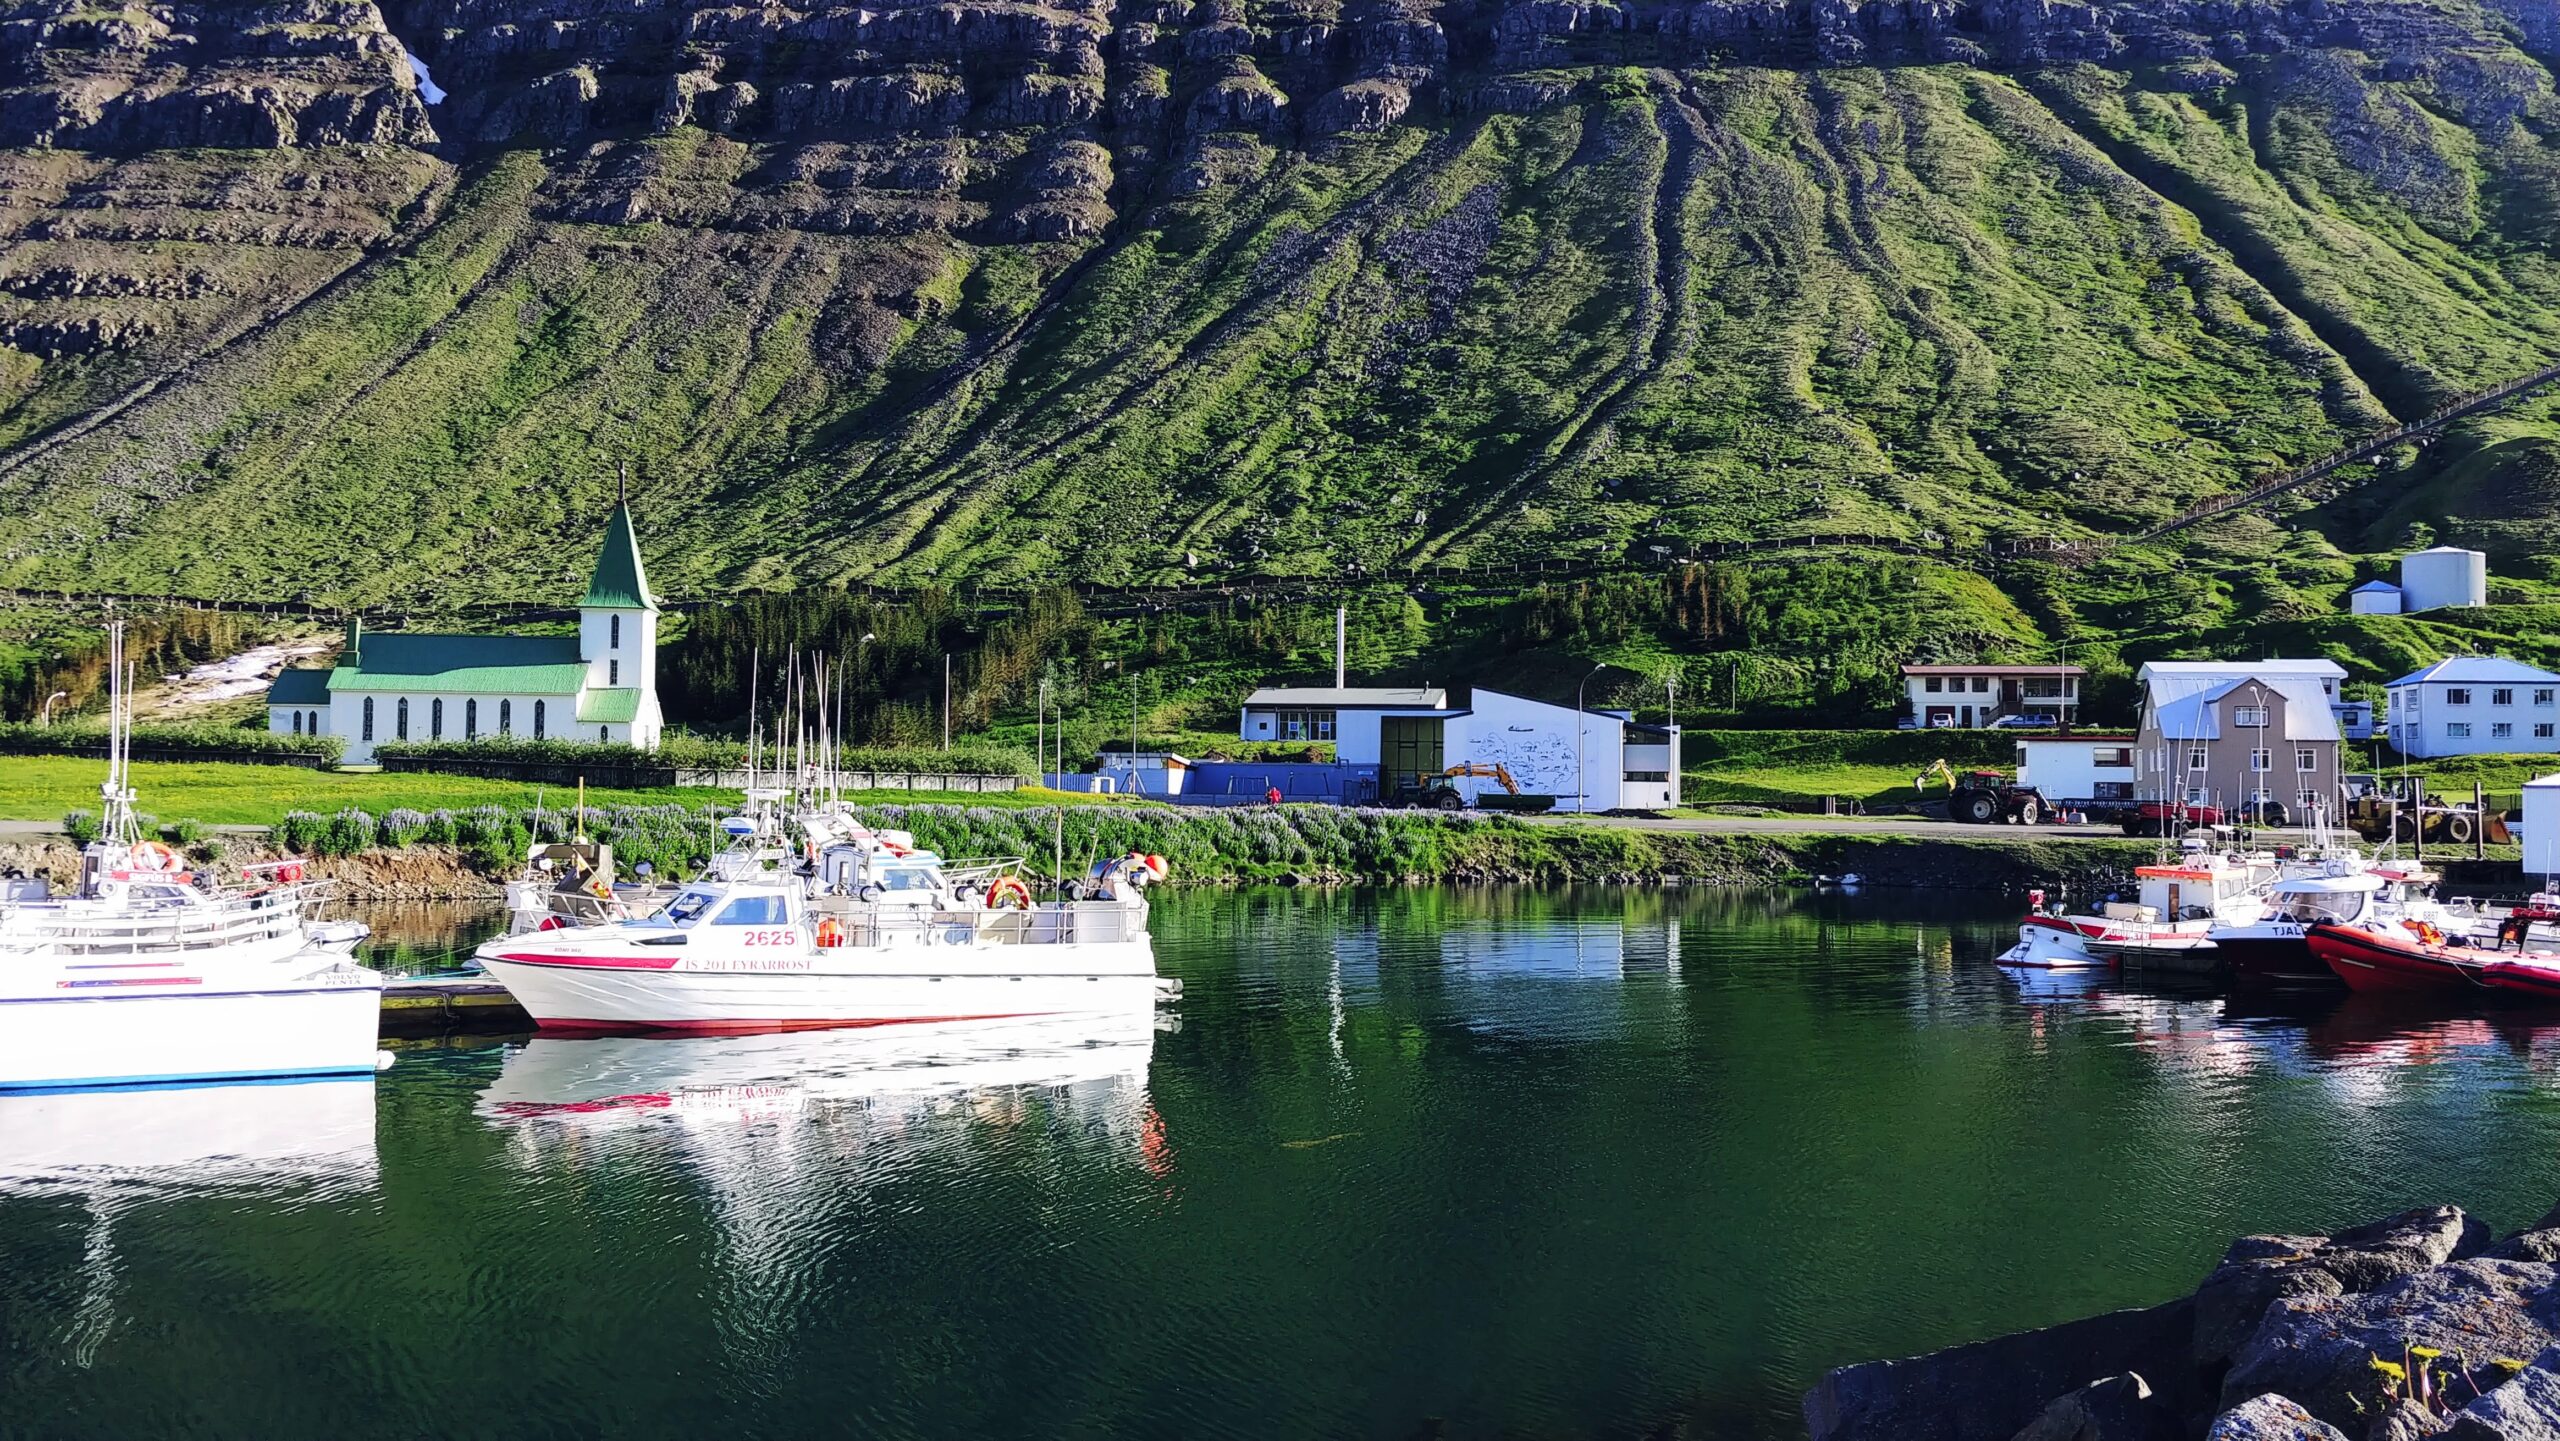 Suðureyri